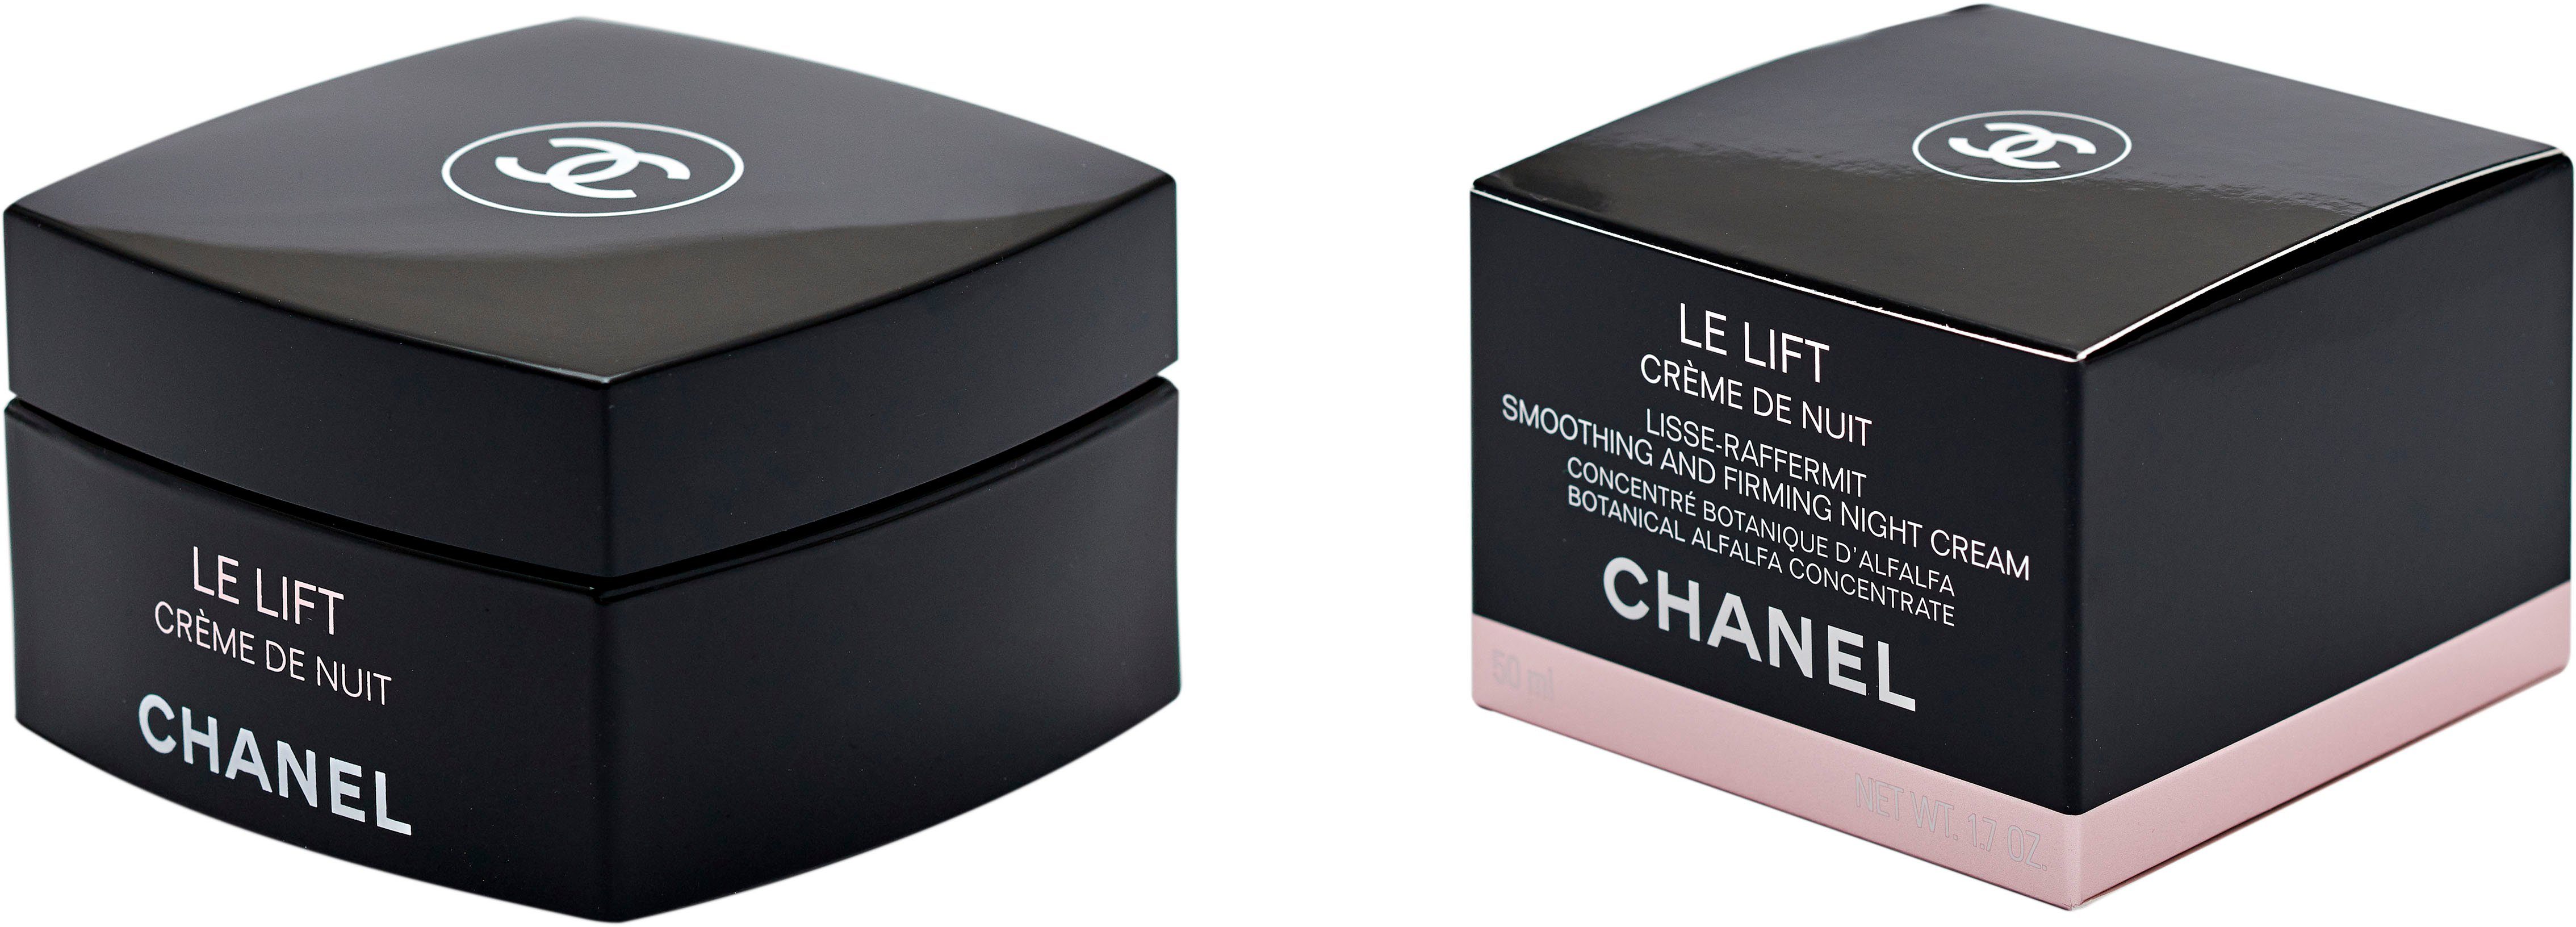 Creme CHANEL Chanel Lift De Le Nuit Nachtcreme